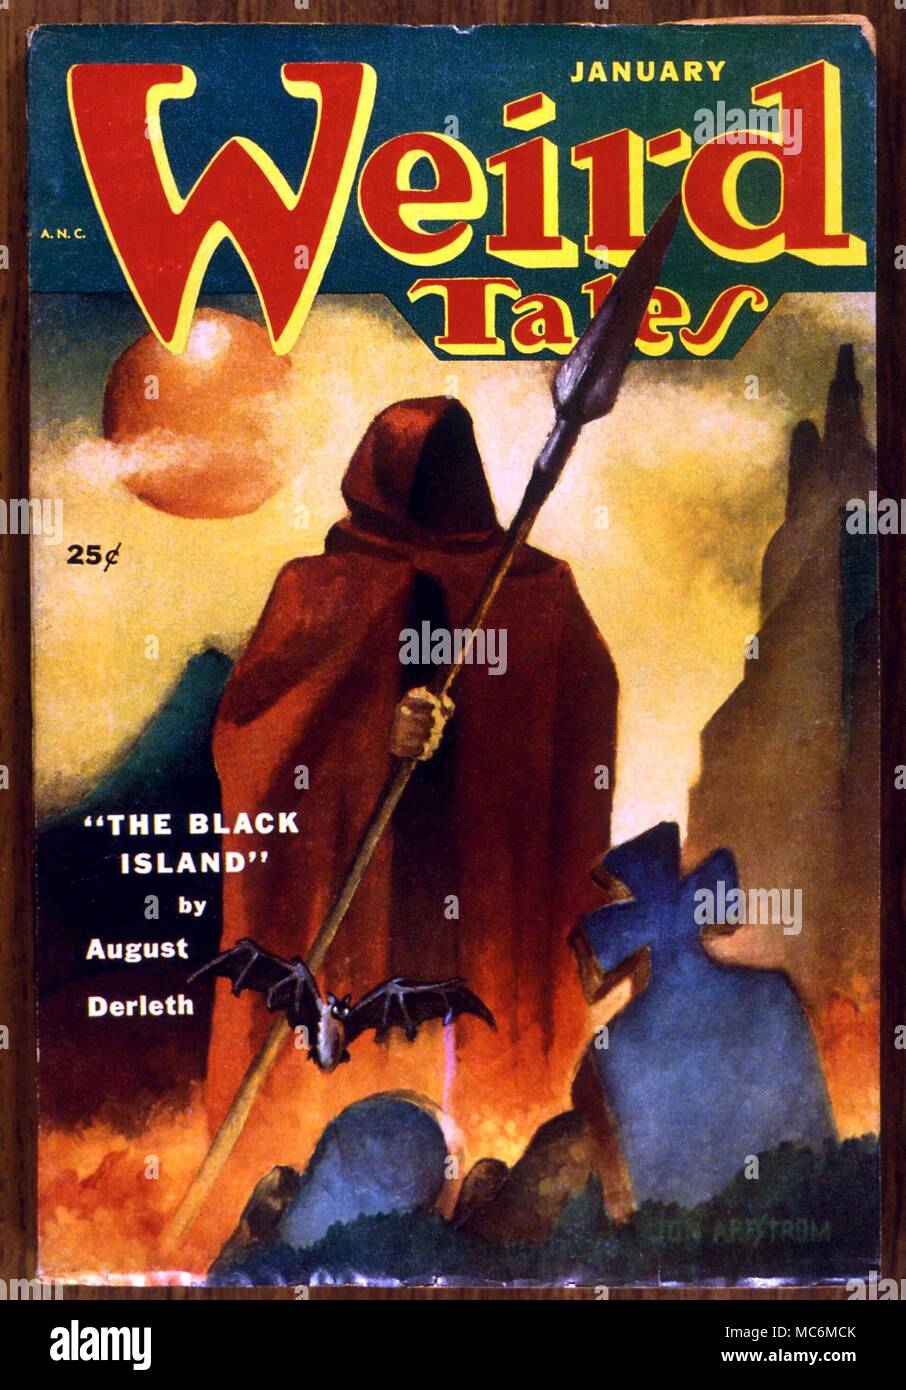 DEATH - 'Wierd Tales' jacket. January 1953 - artwork by Jon Arestrom Stock Photo